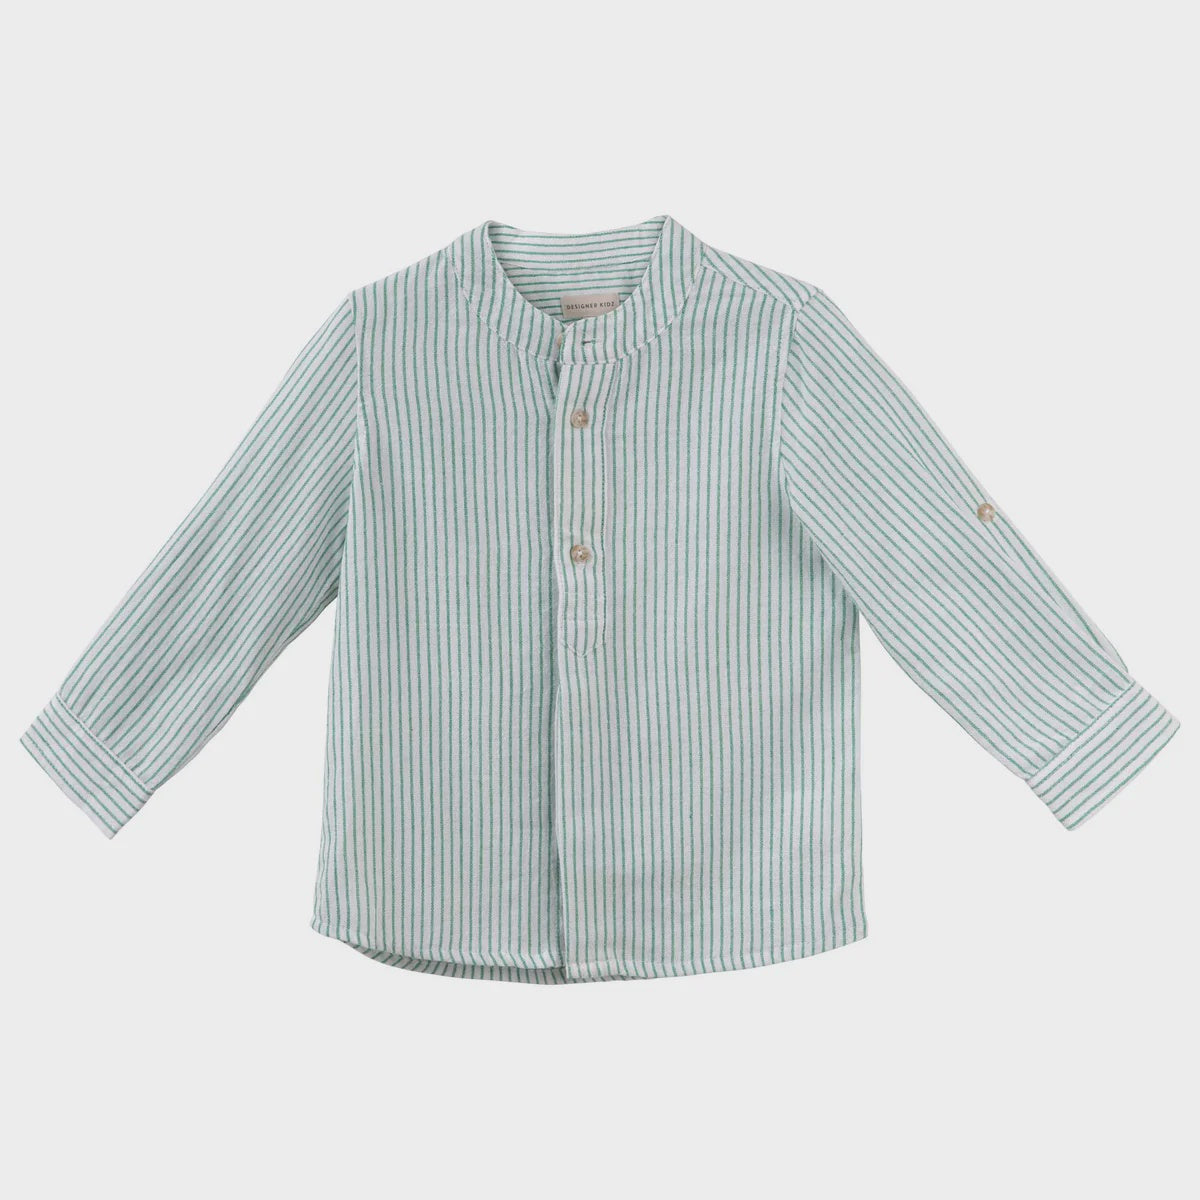 Designer Kidz | Luca Long Sleeve Button Shirt - Green Stripe